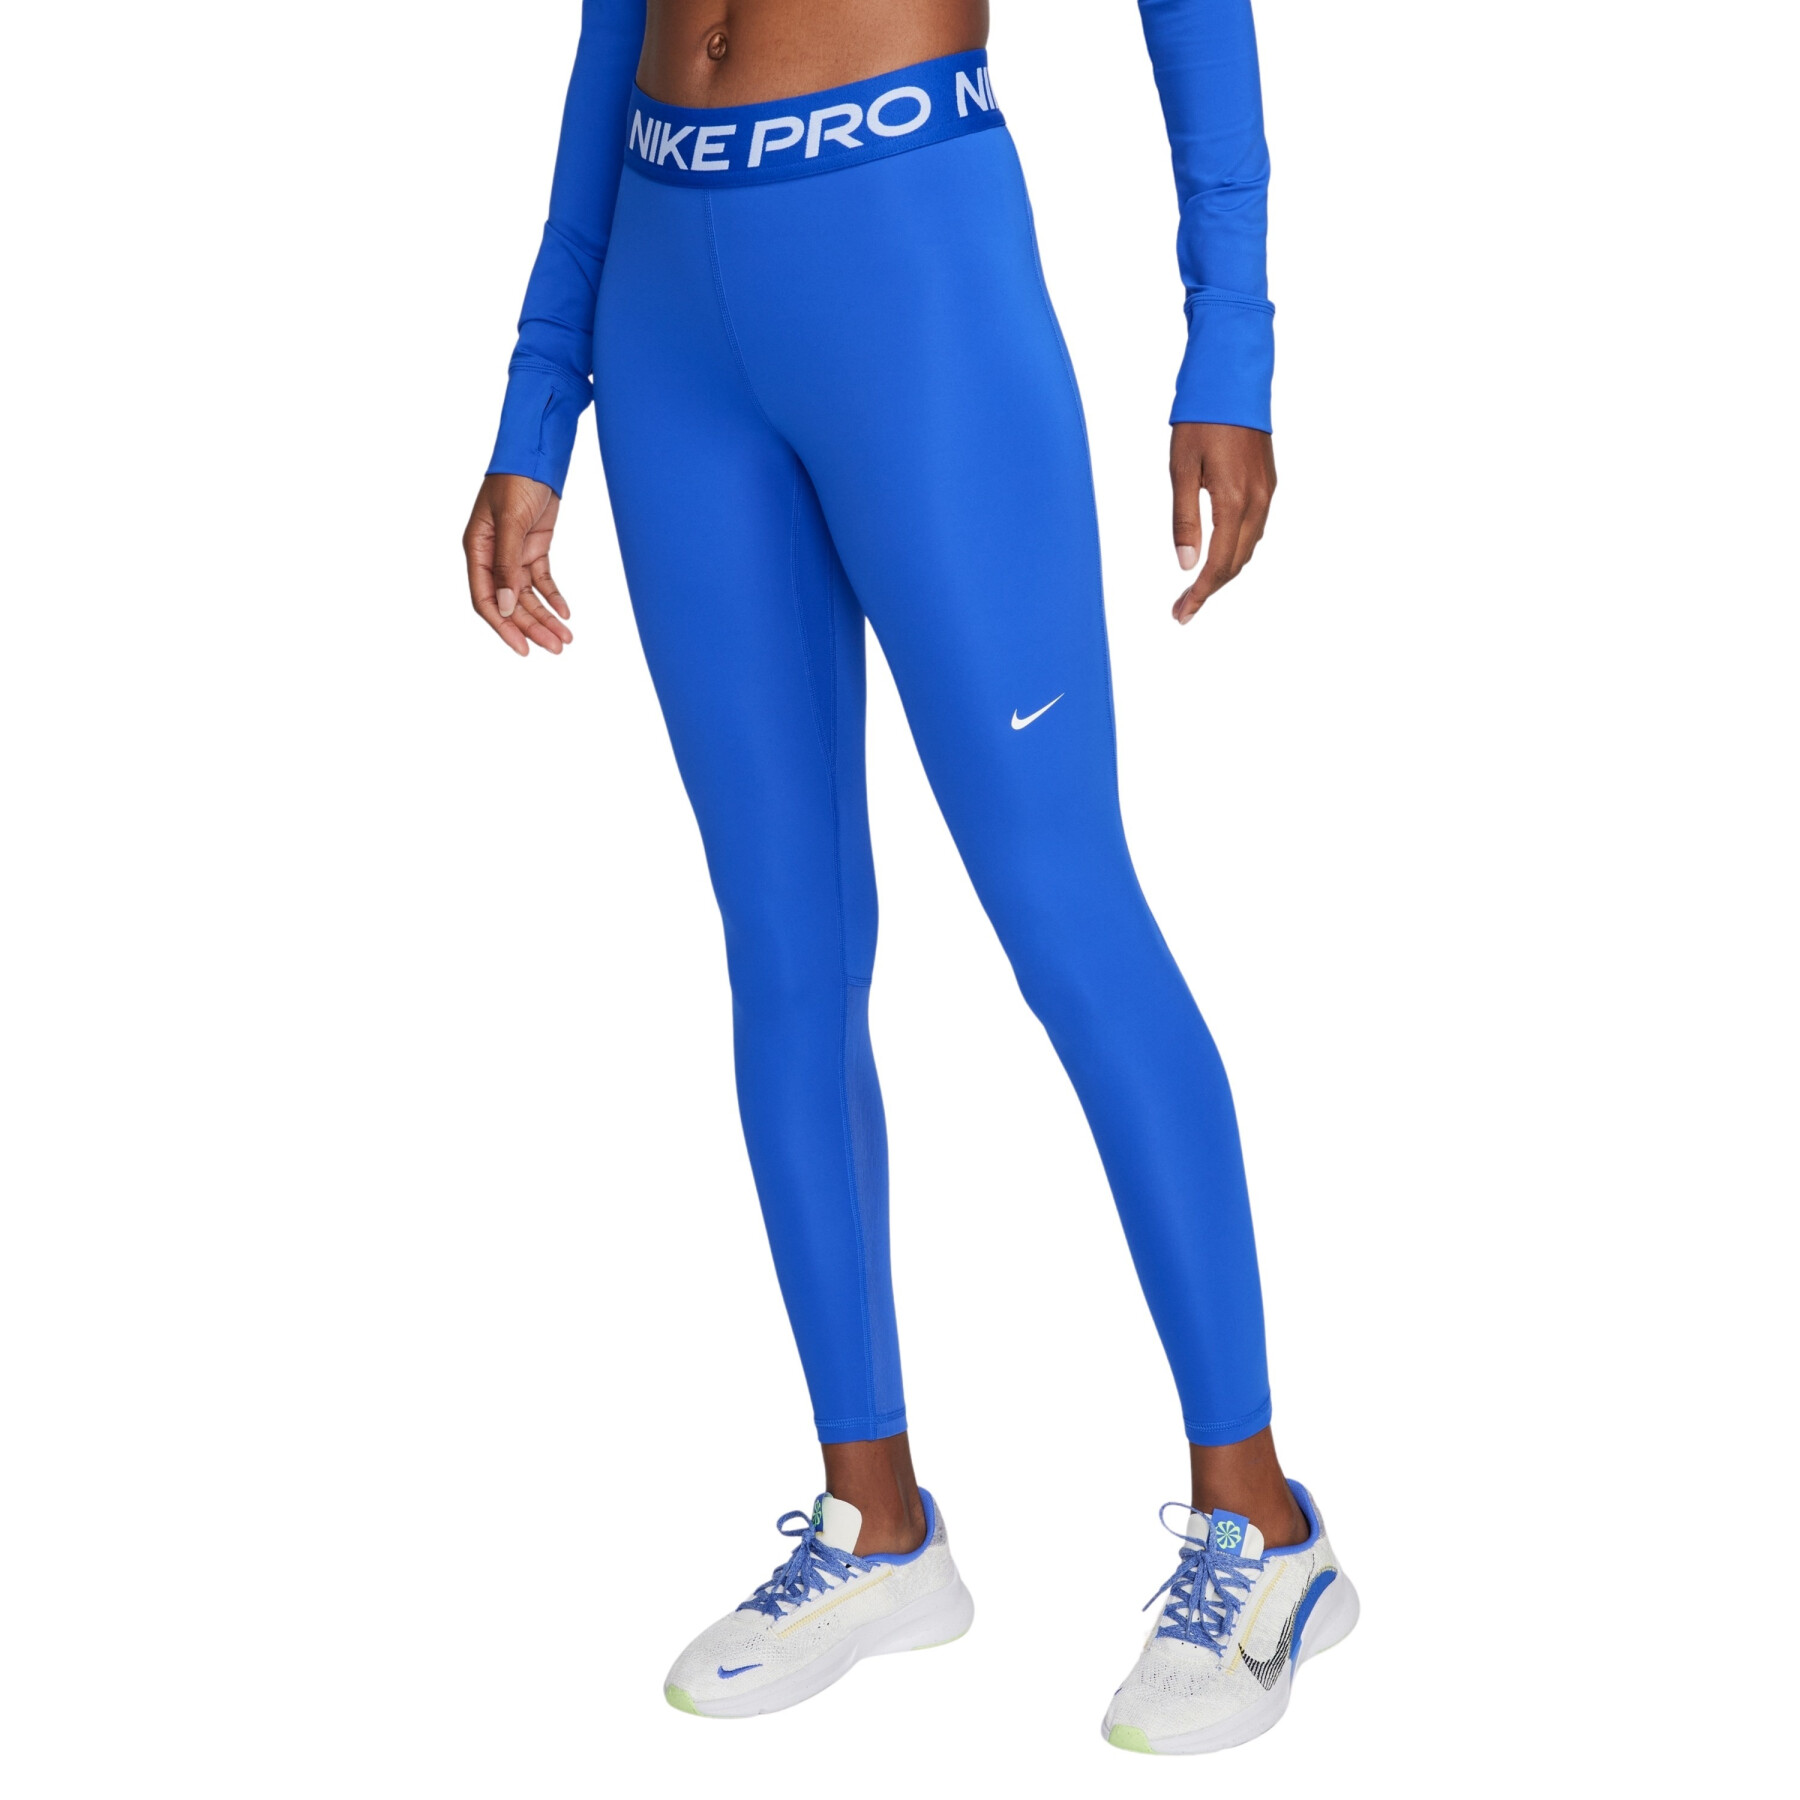 Women's leggings Nike Pro 365 - Nike - Brands - Handball wear